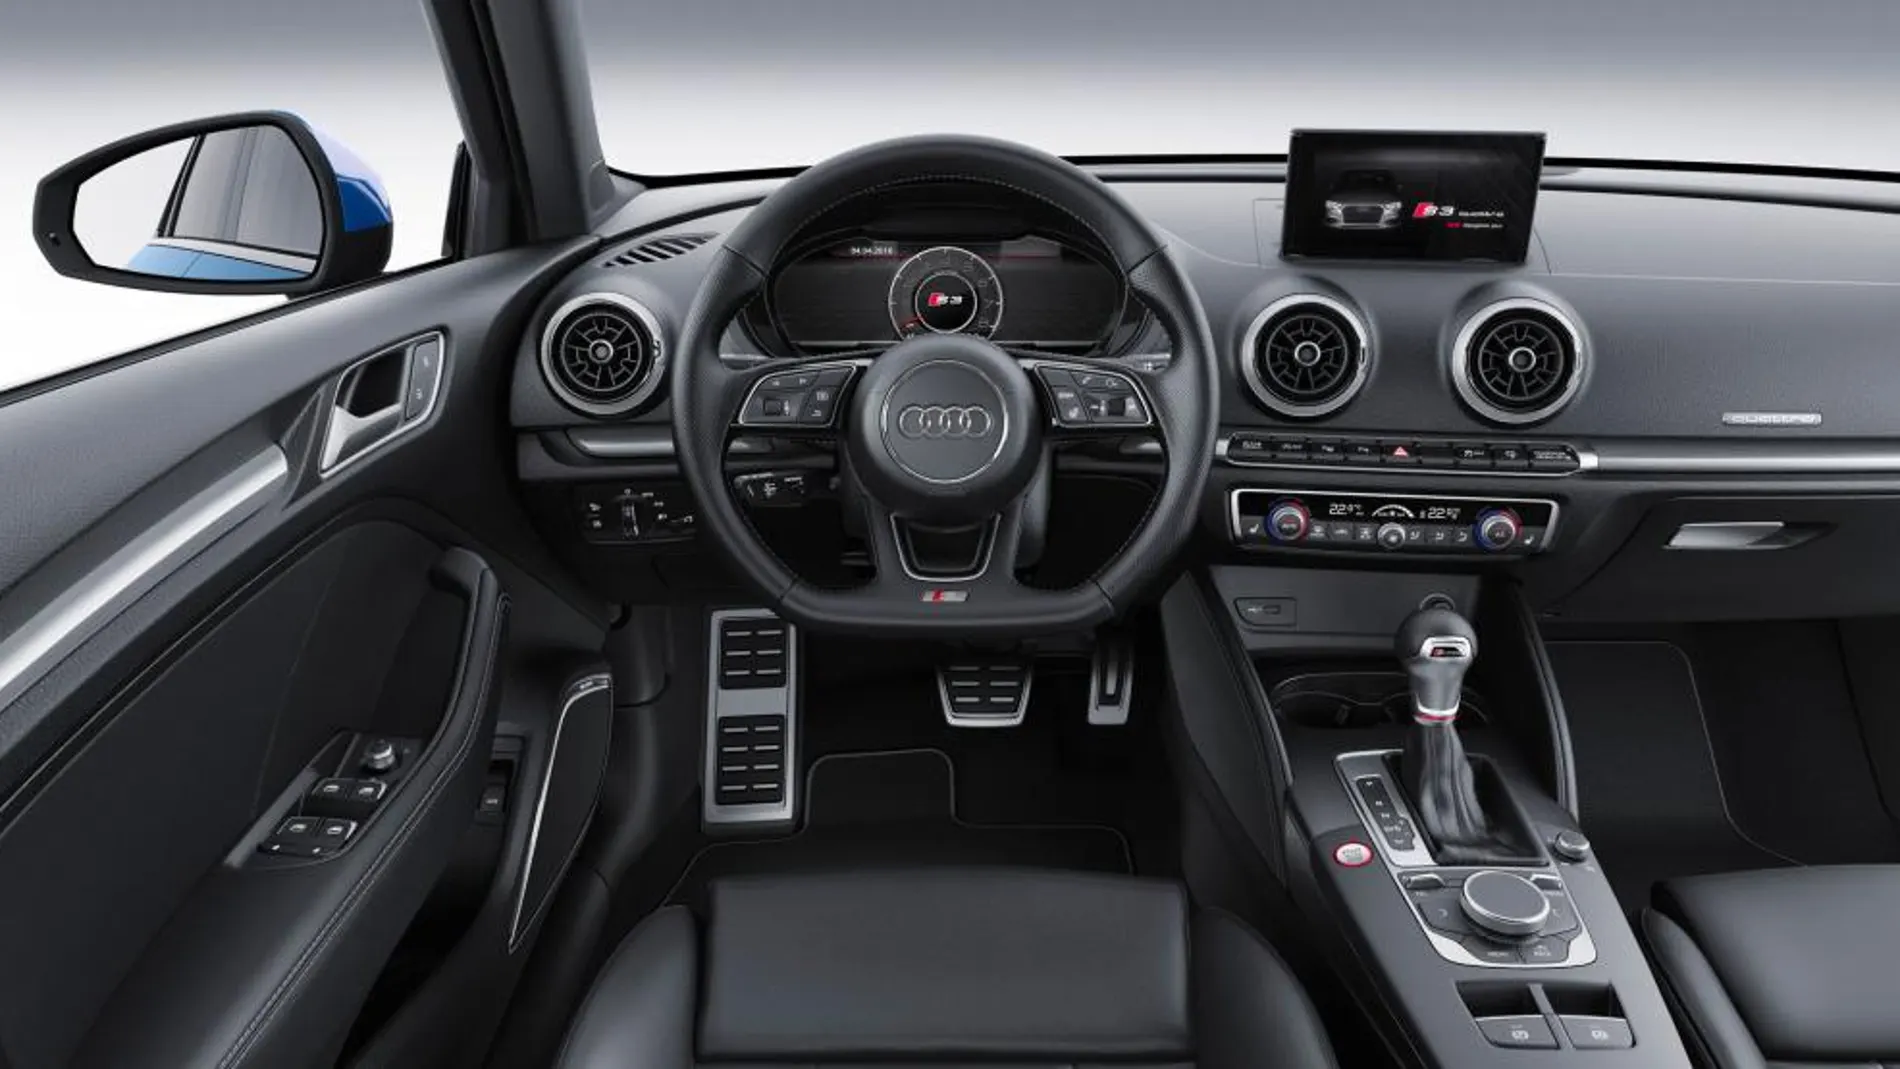 Equipa el cuadro de instrumentos digital Audi Virtual Cockpit.